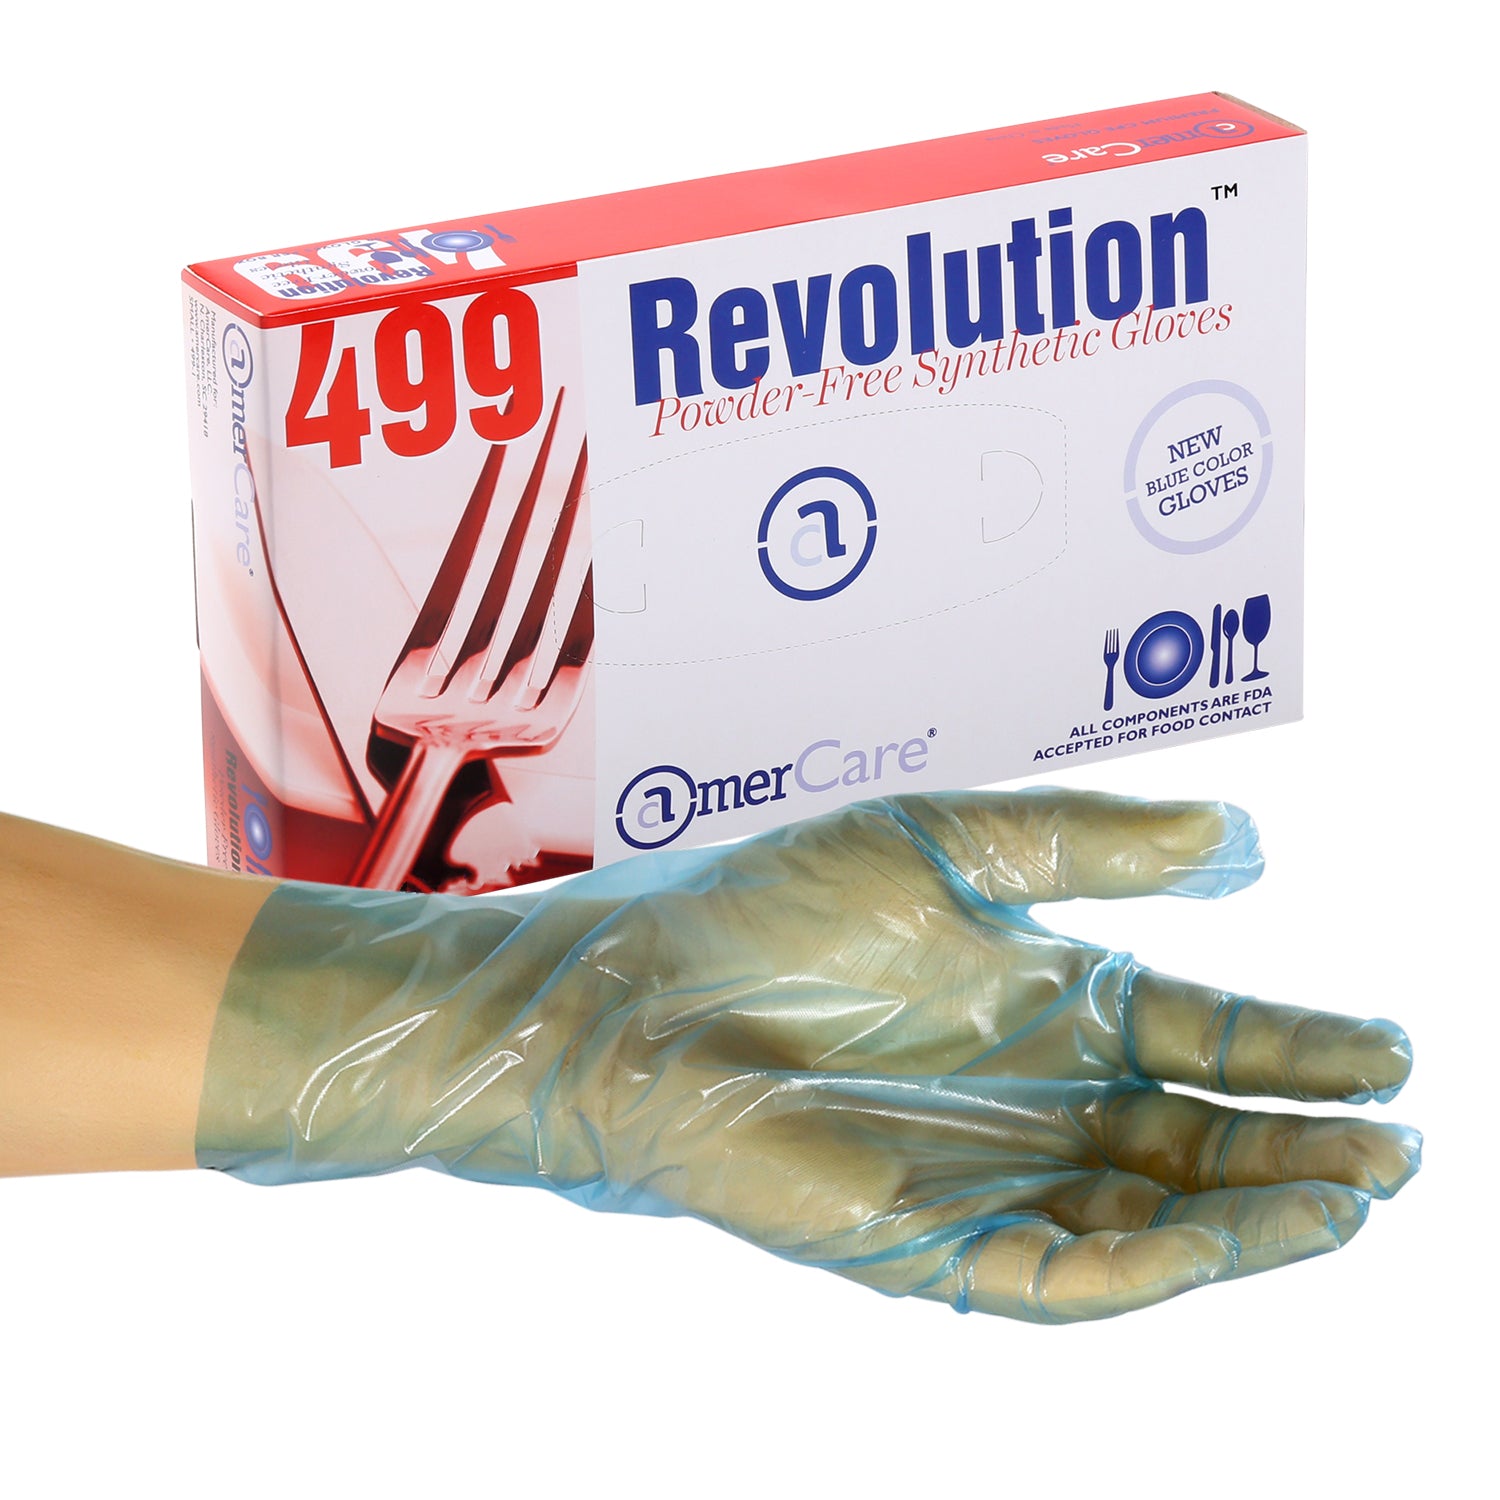 Grape Grip Powder Free Nitrile Exam Gloves, Case of 1,000 – GloveNation